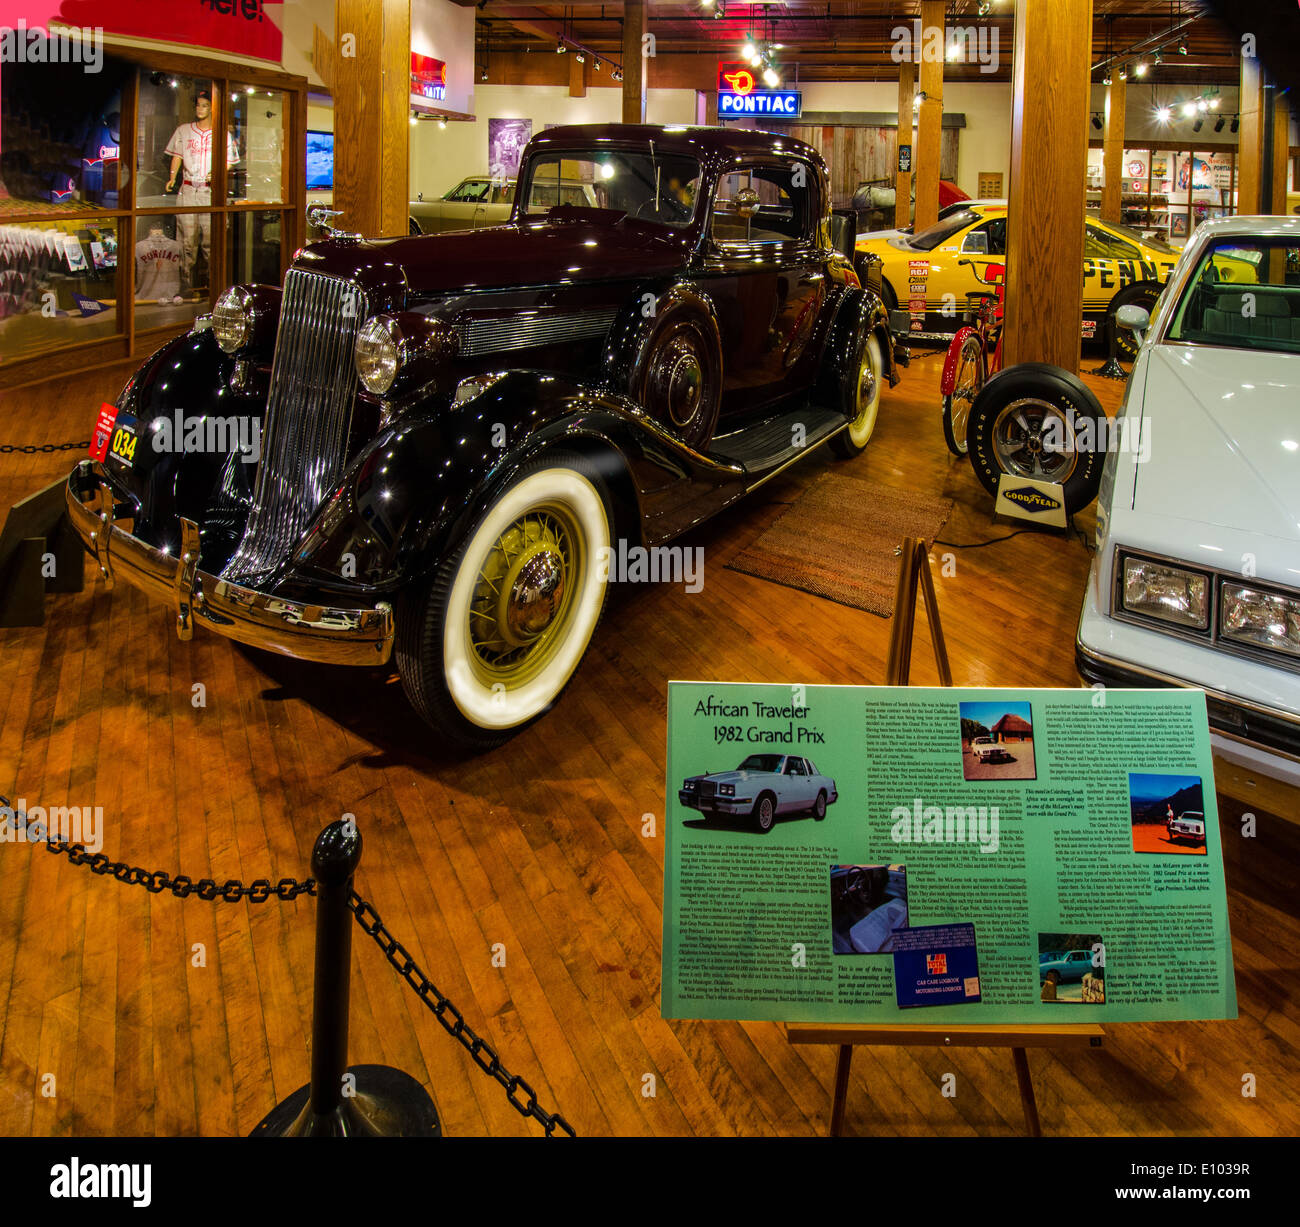 Le Pontiac-Oakland Museum de Pontiac, Illinois, une ville le long de la Route 66 Banque D'Images